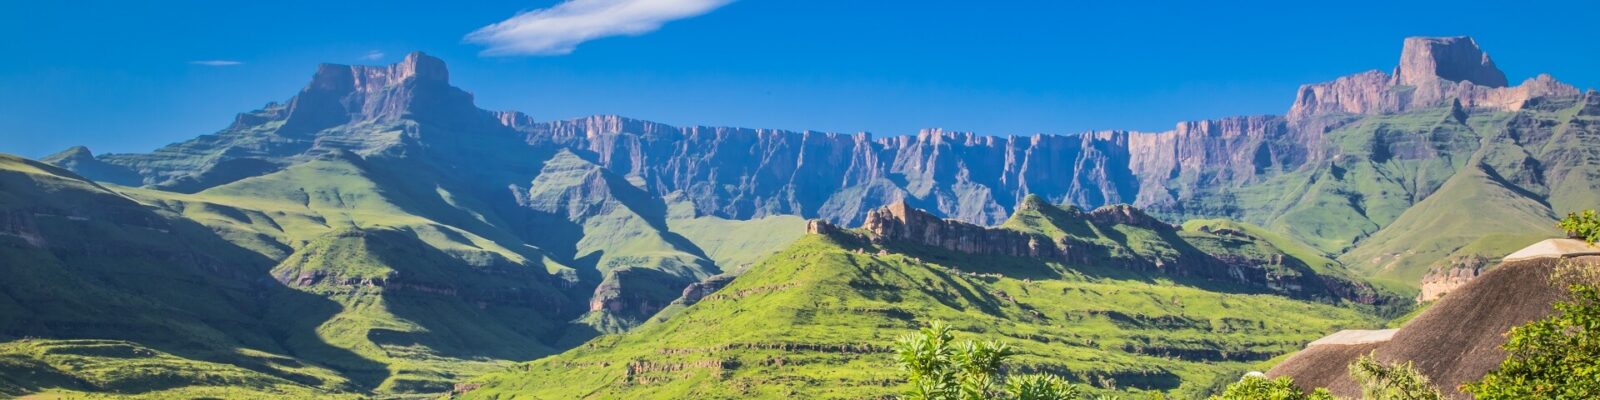 Drakensberg National Park